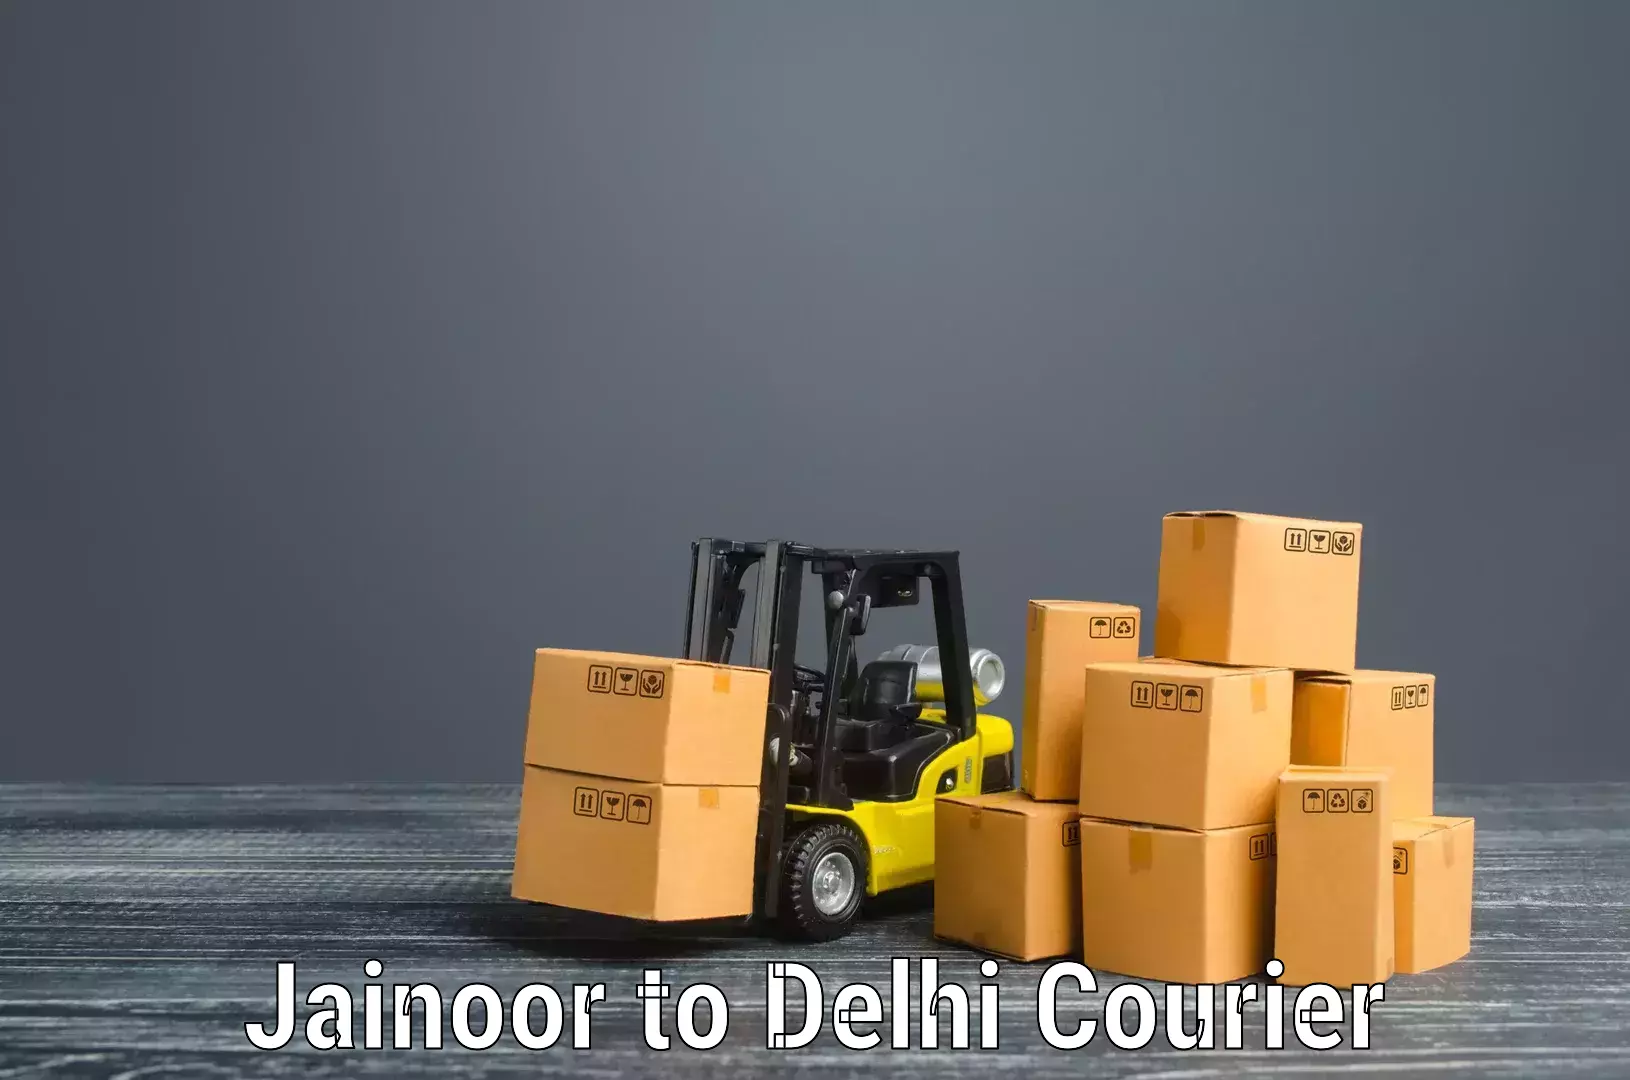 Home relocation solutions Jainoor to University of Delhi